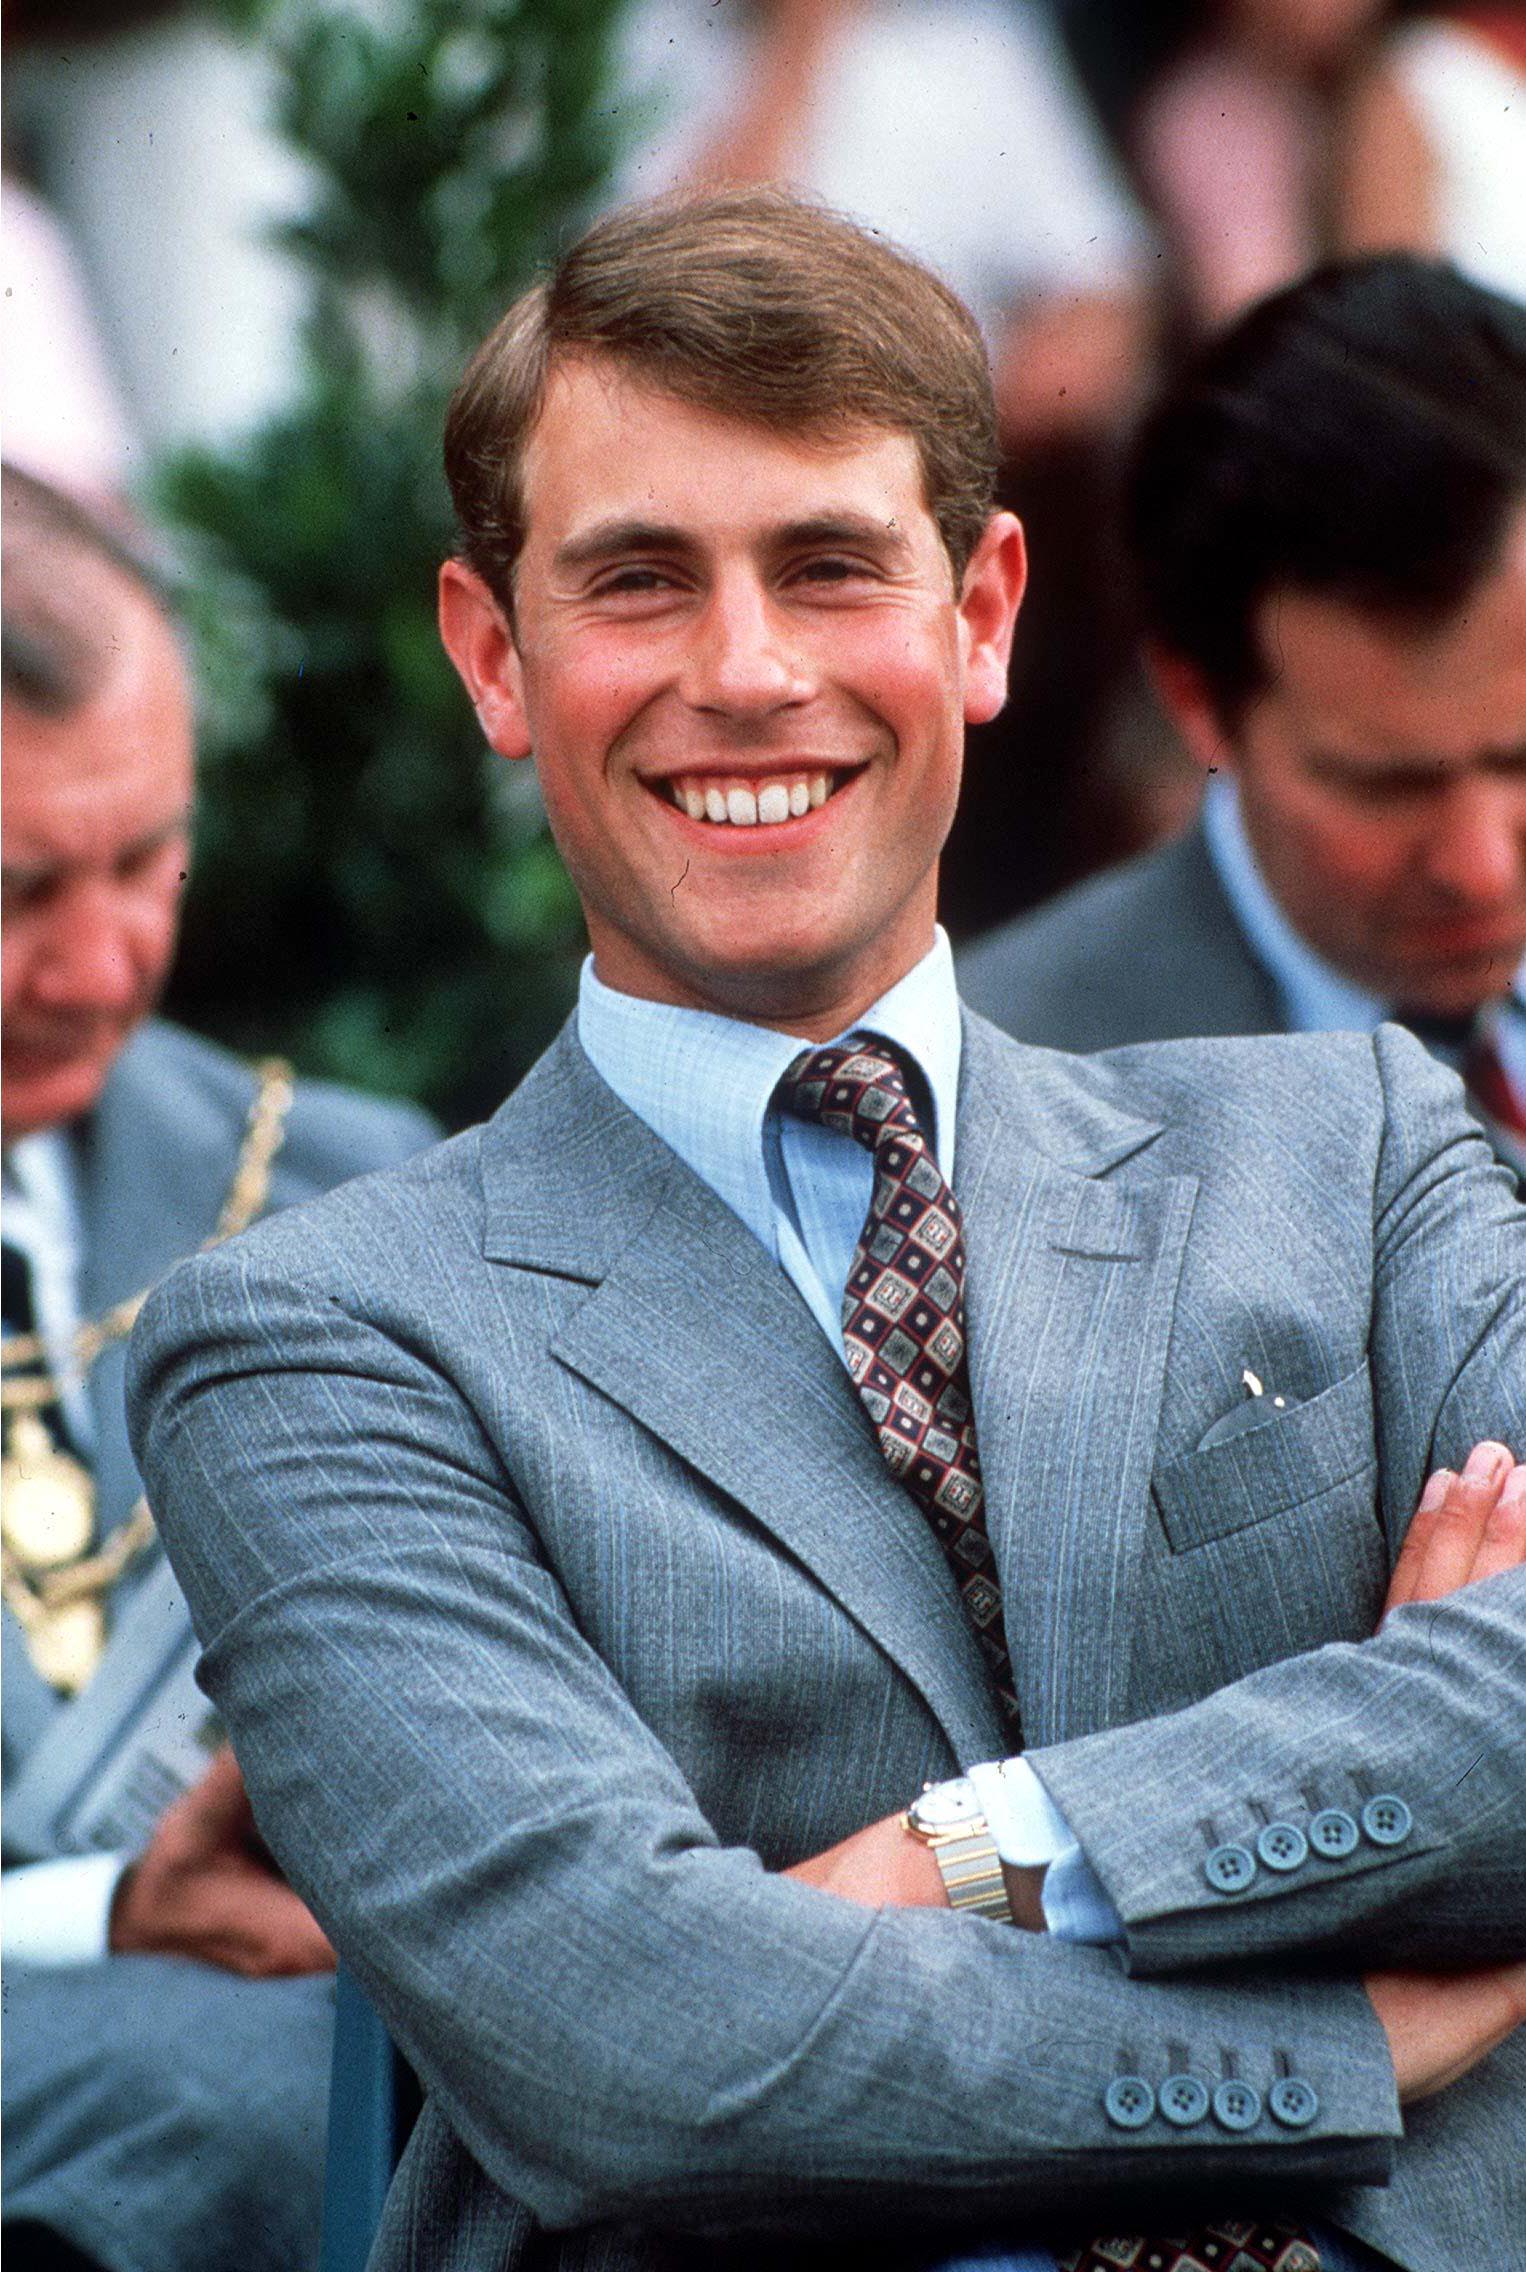 Après une décennie en tant que directeur de l'entreprise, Edward a démissionné pour devenir membre royal travaillant à plein temps - photographié ici à Ascot en 1984.